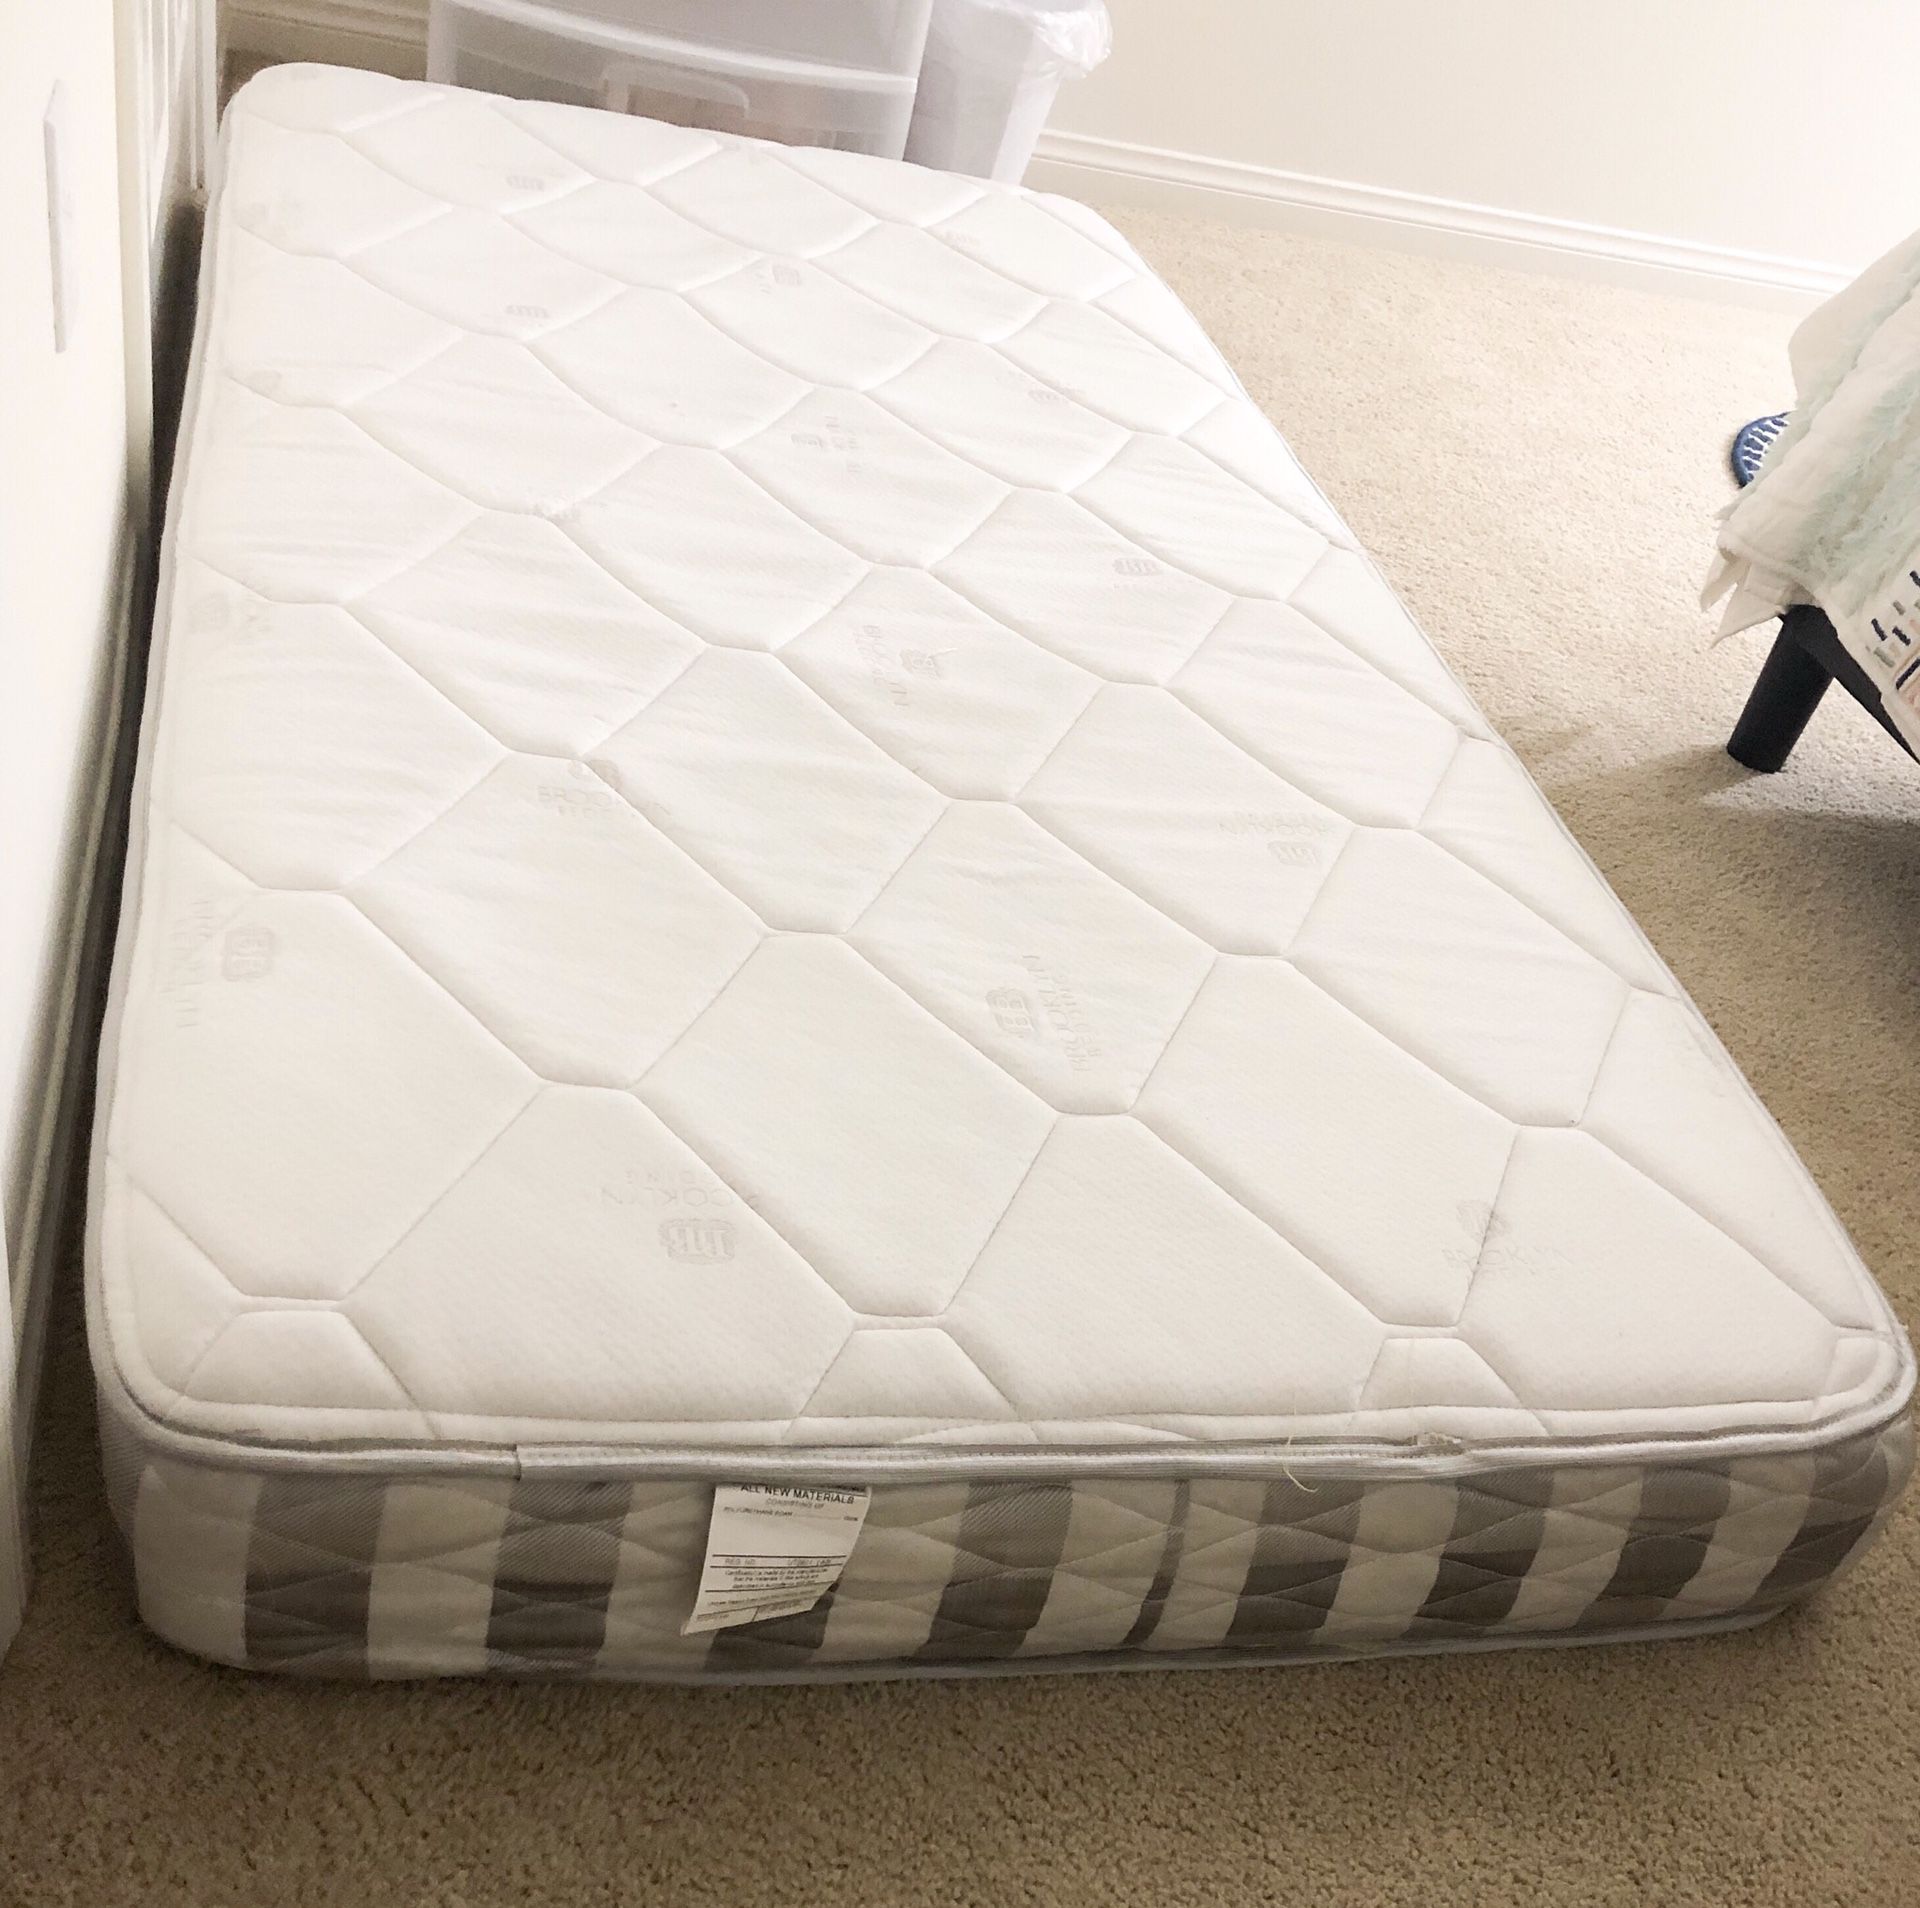 6” twin mattress & mattress cover